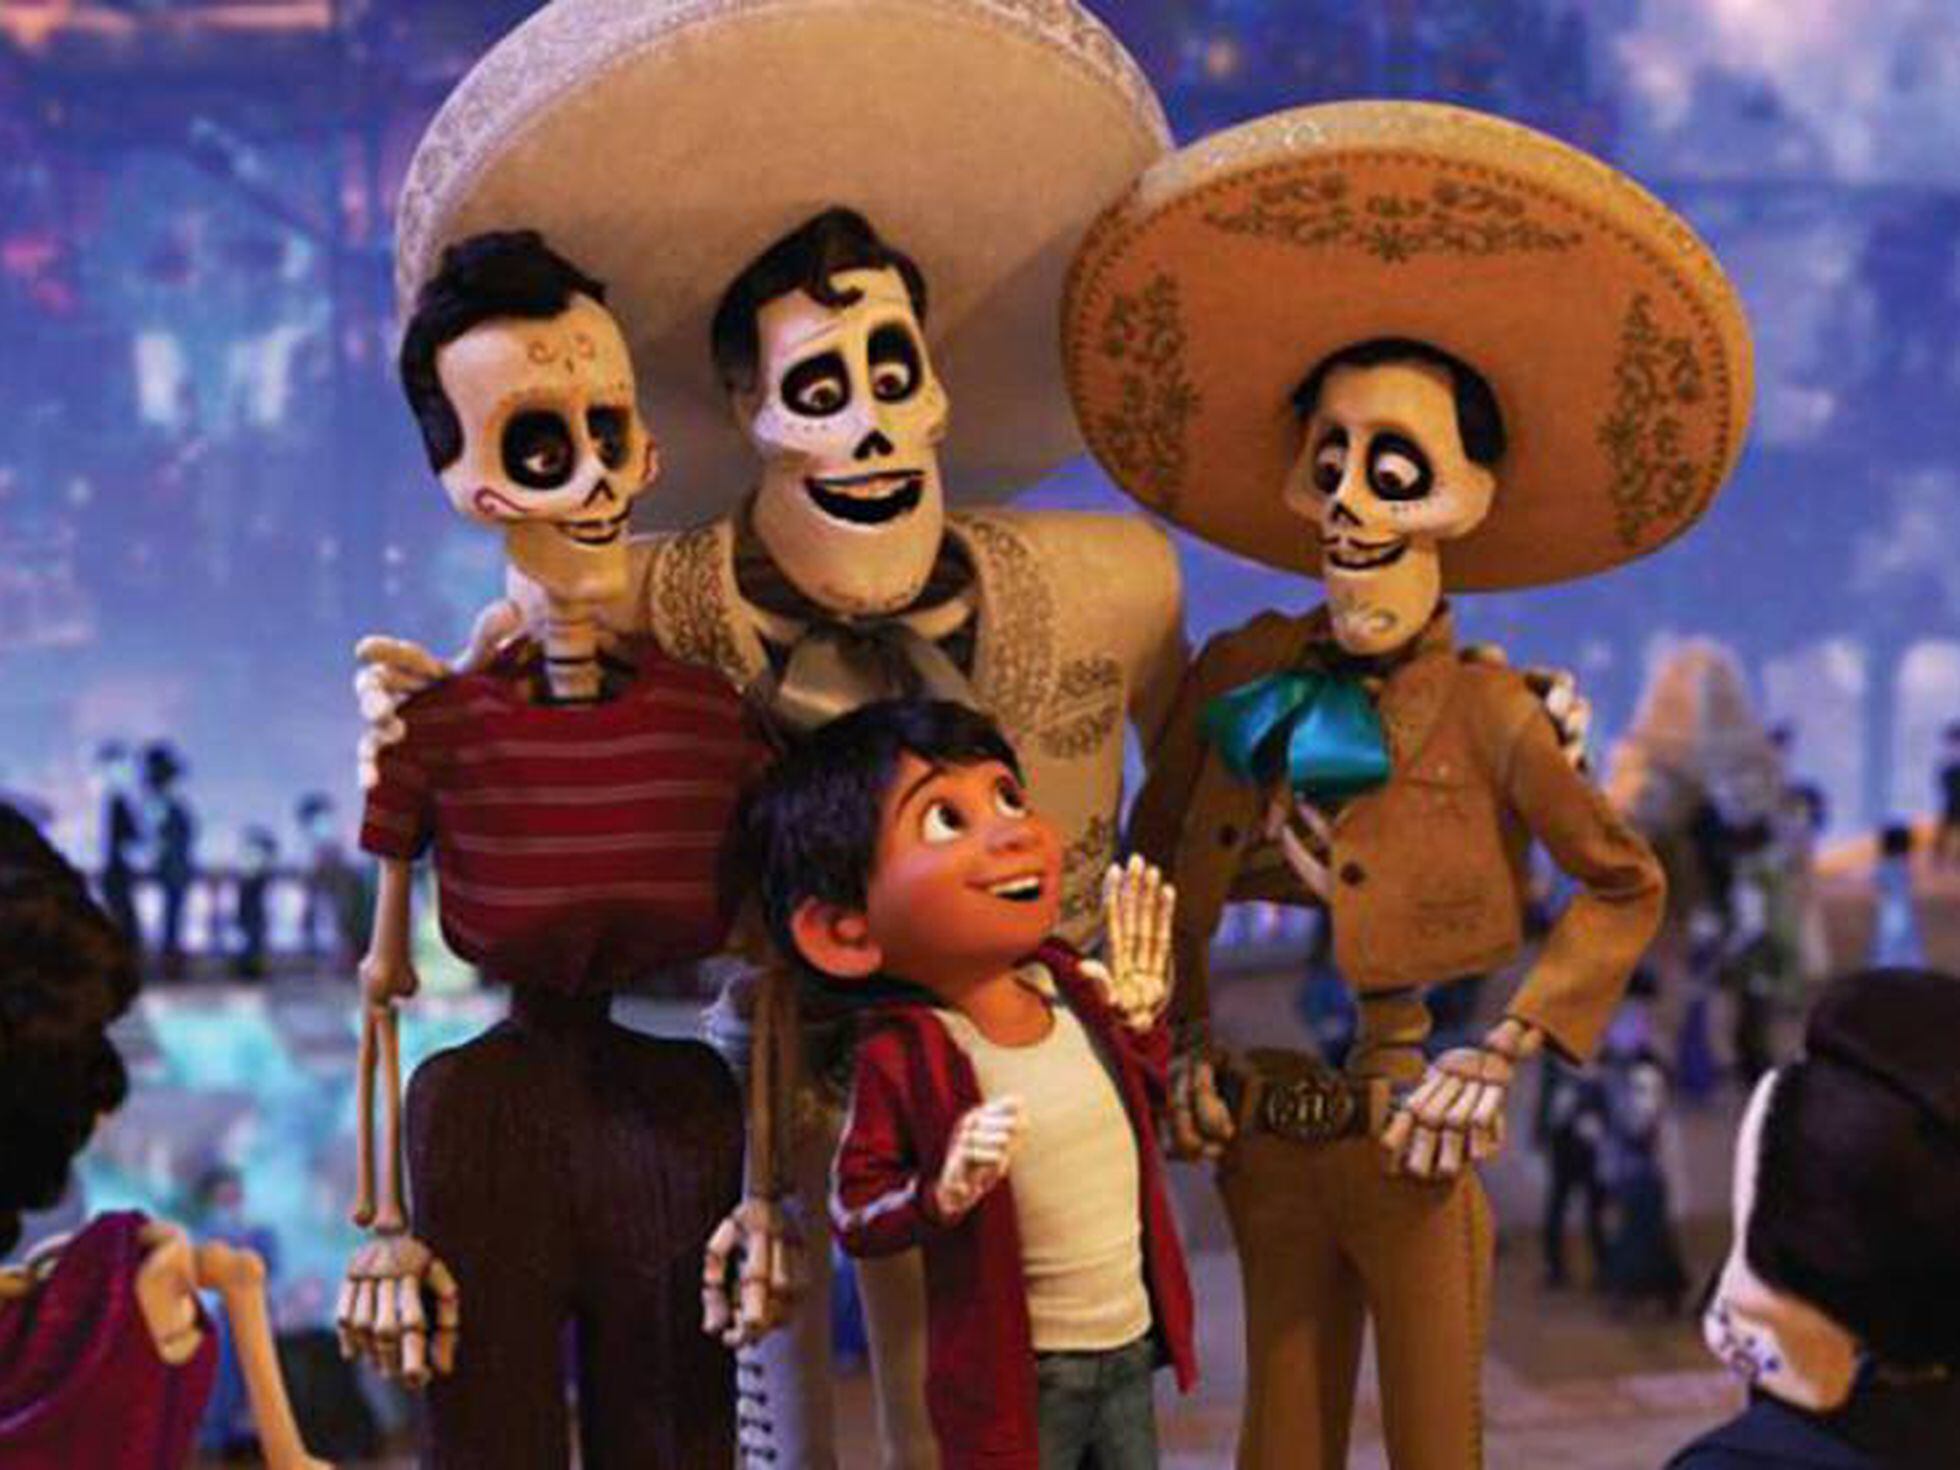 recibir Significativo victoria Disney: 'Coco' arrasa con su fiel retrato del Día de los Muertos de México  | Cultura | EL PAÍS